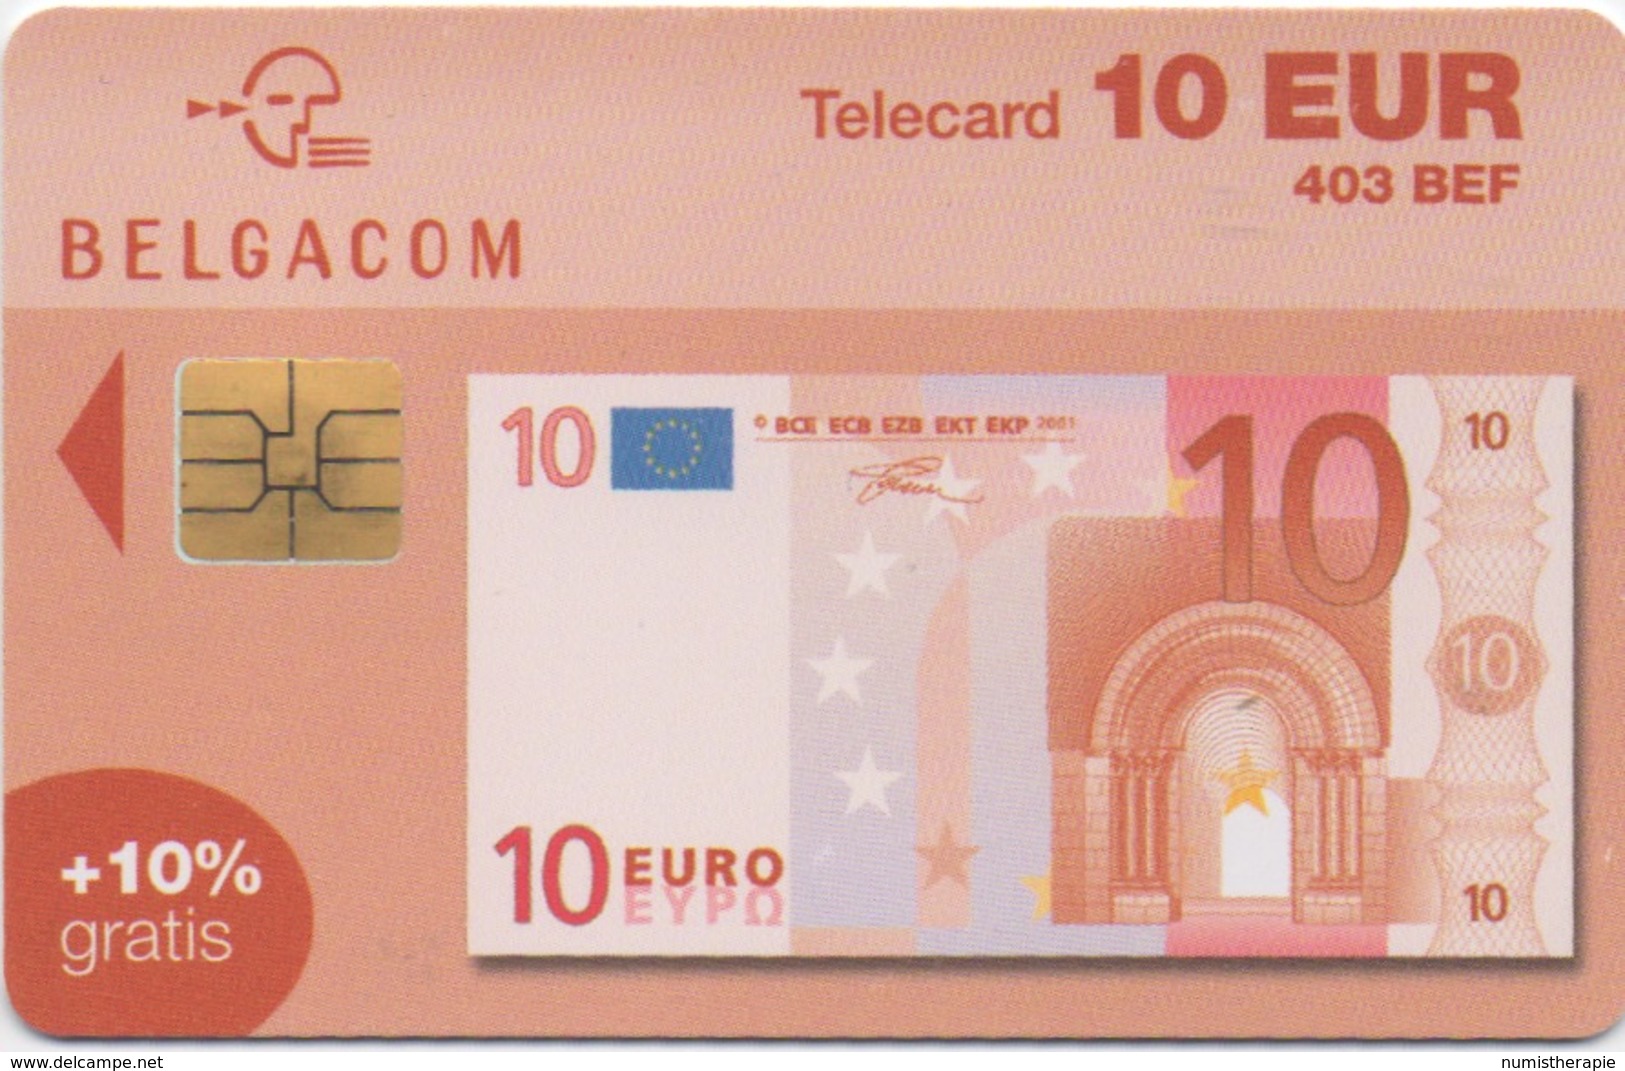 Télécarte Belgacom : 10 EUR Billet De Banque (403 BEF) Valable Jusqu'au 31/12/2004 - Postzegels & Munten